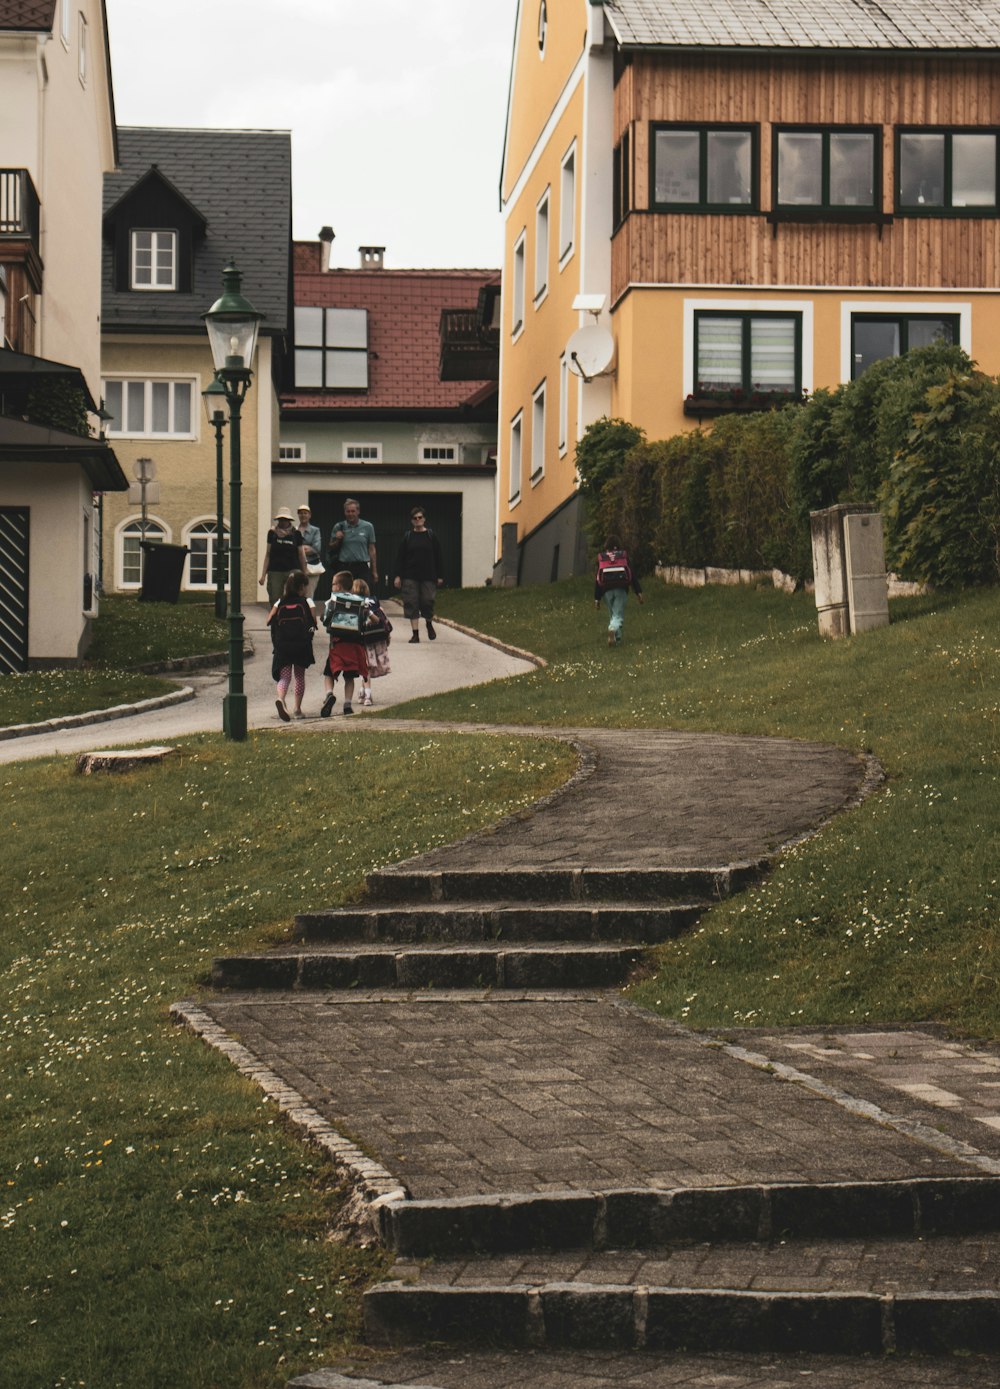 personnes marchant sur un champ d’herbe verte près d’un bâtiment en béton brun pendant la journée